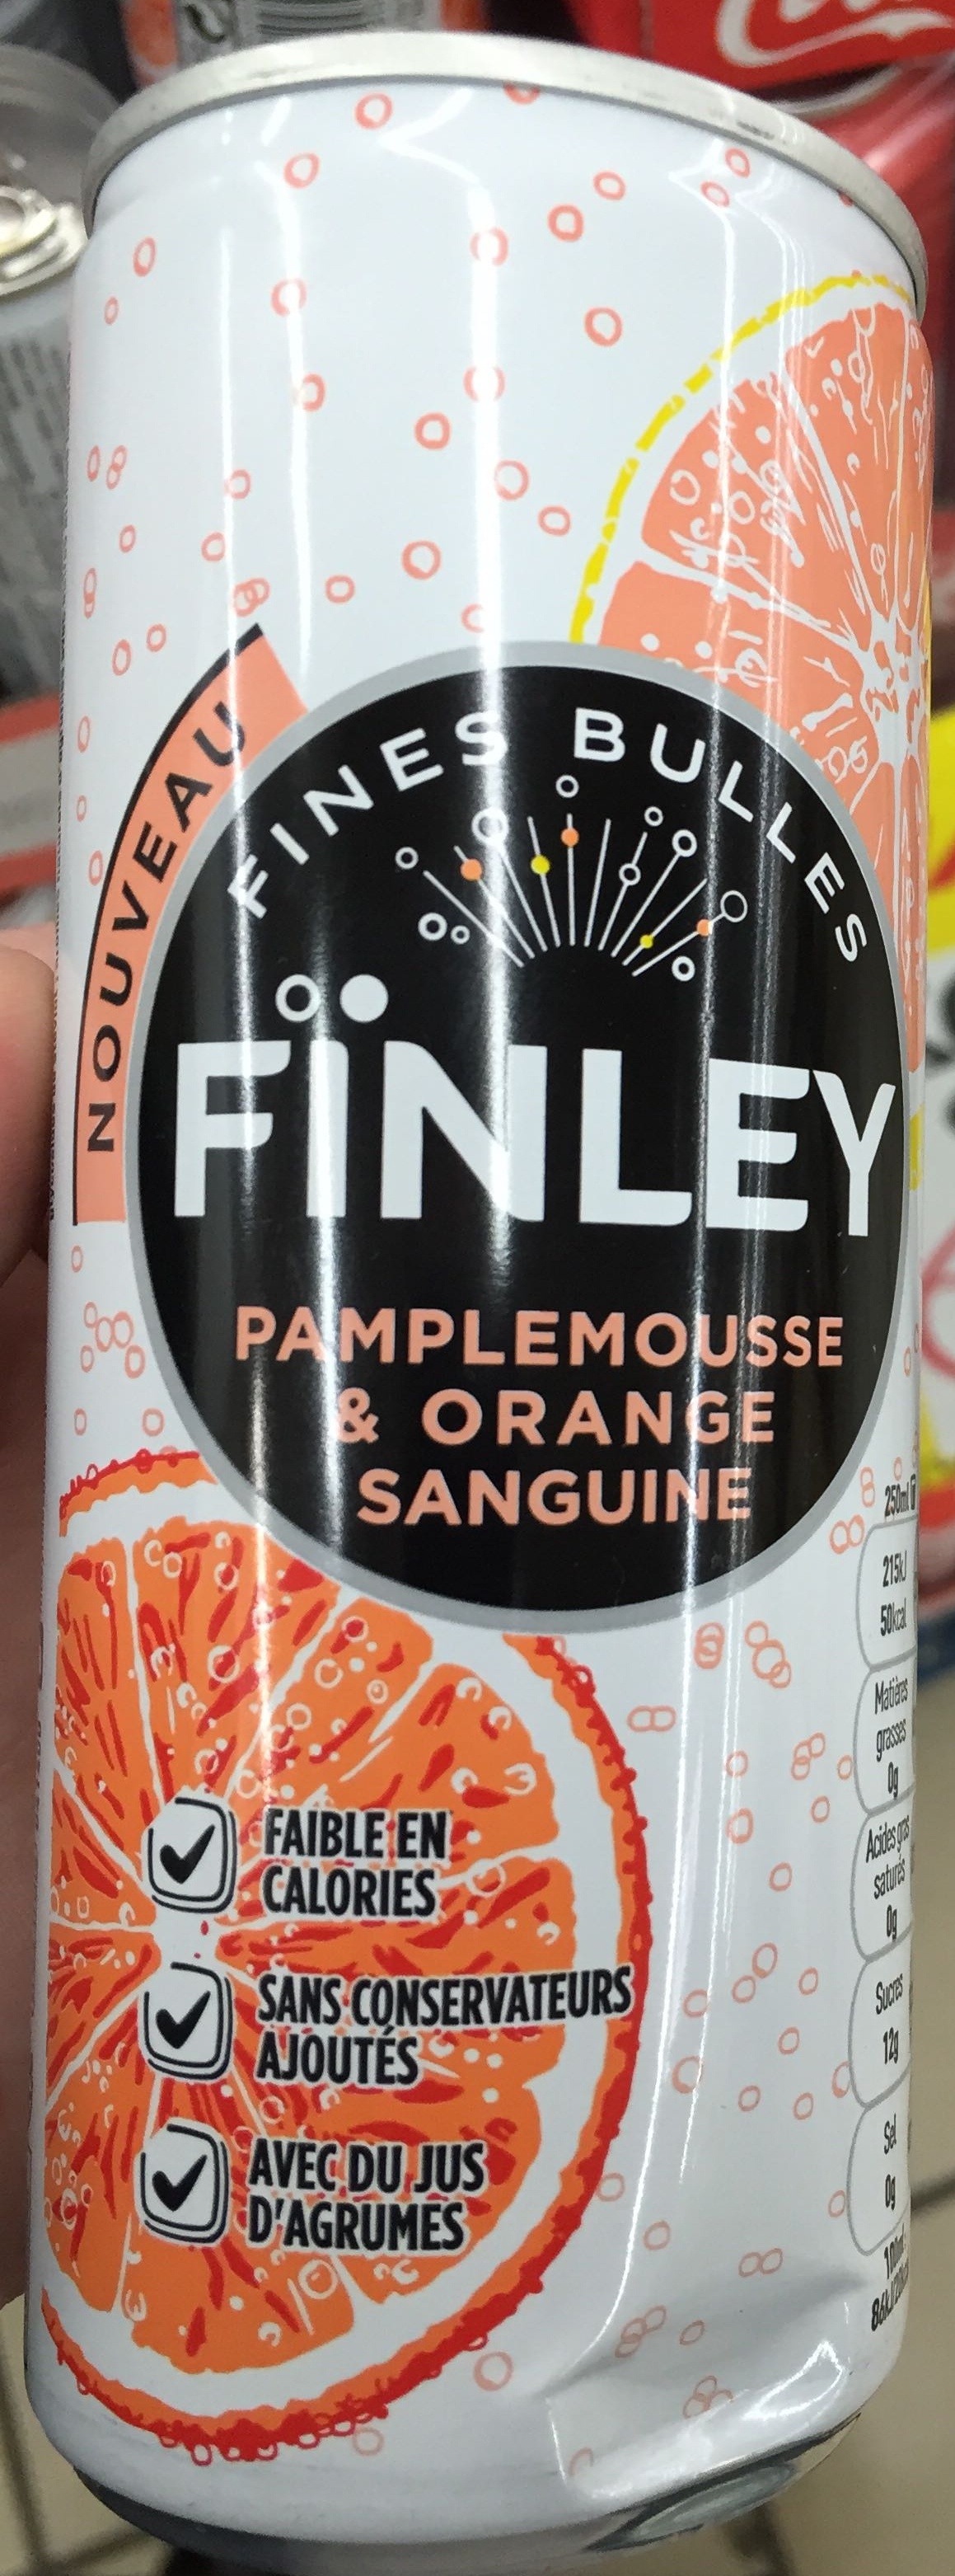 Finley bulles Pamplemousse & orange sanguine - Produit